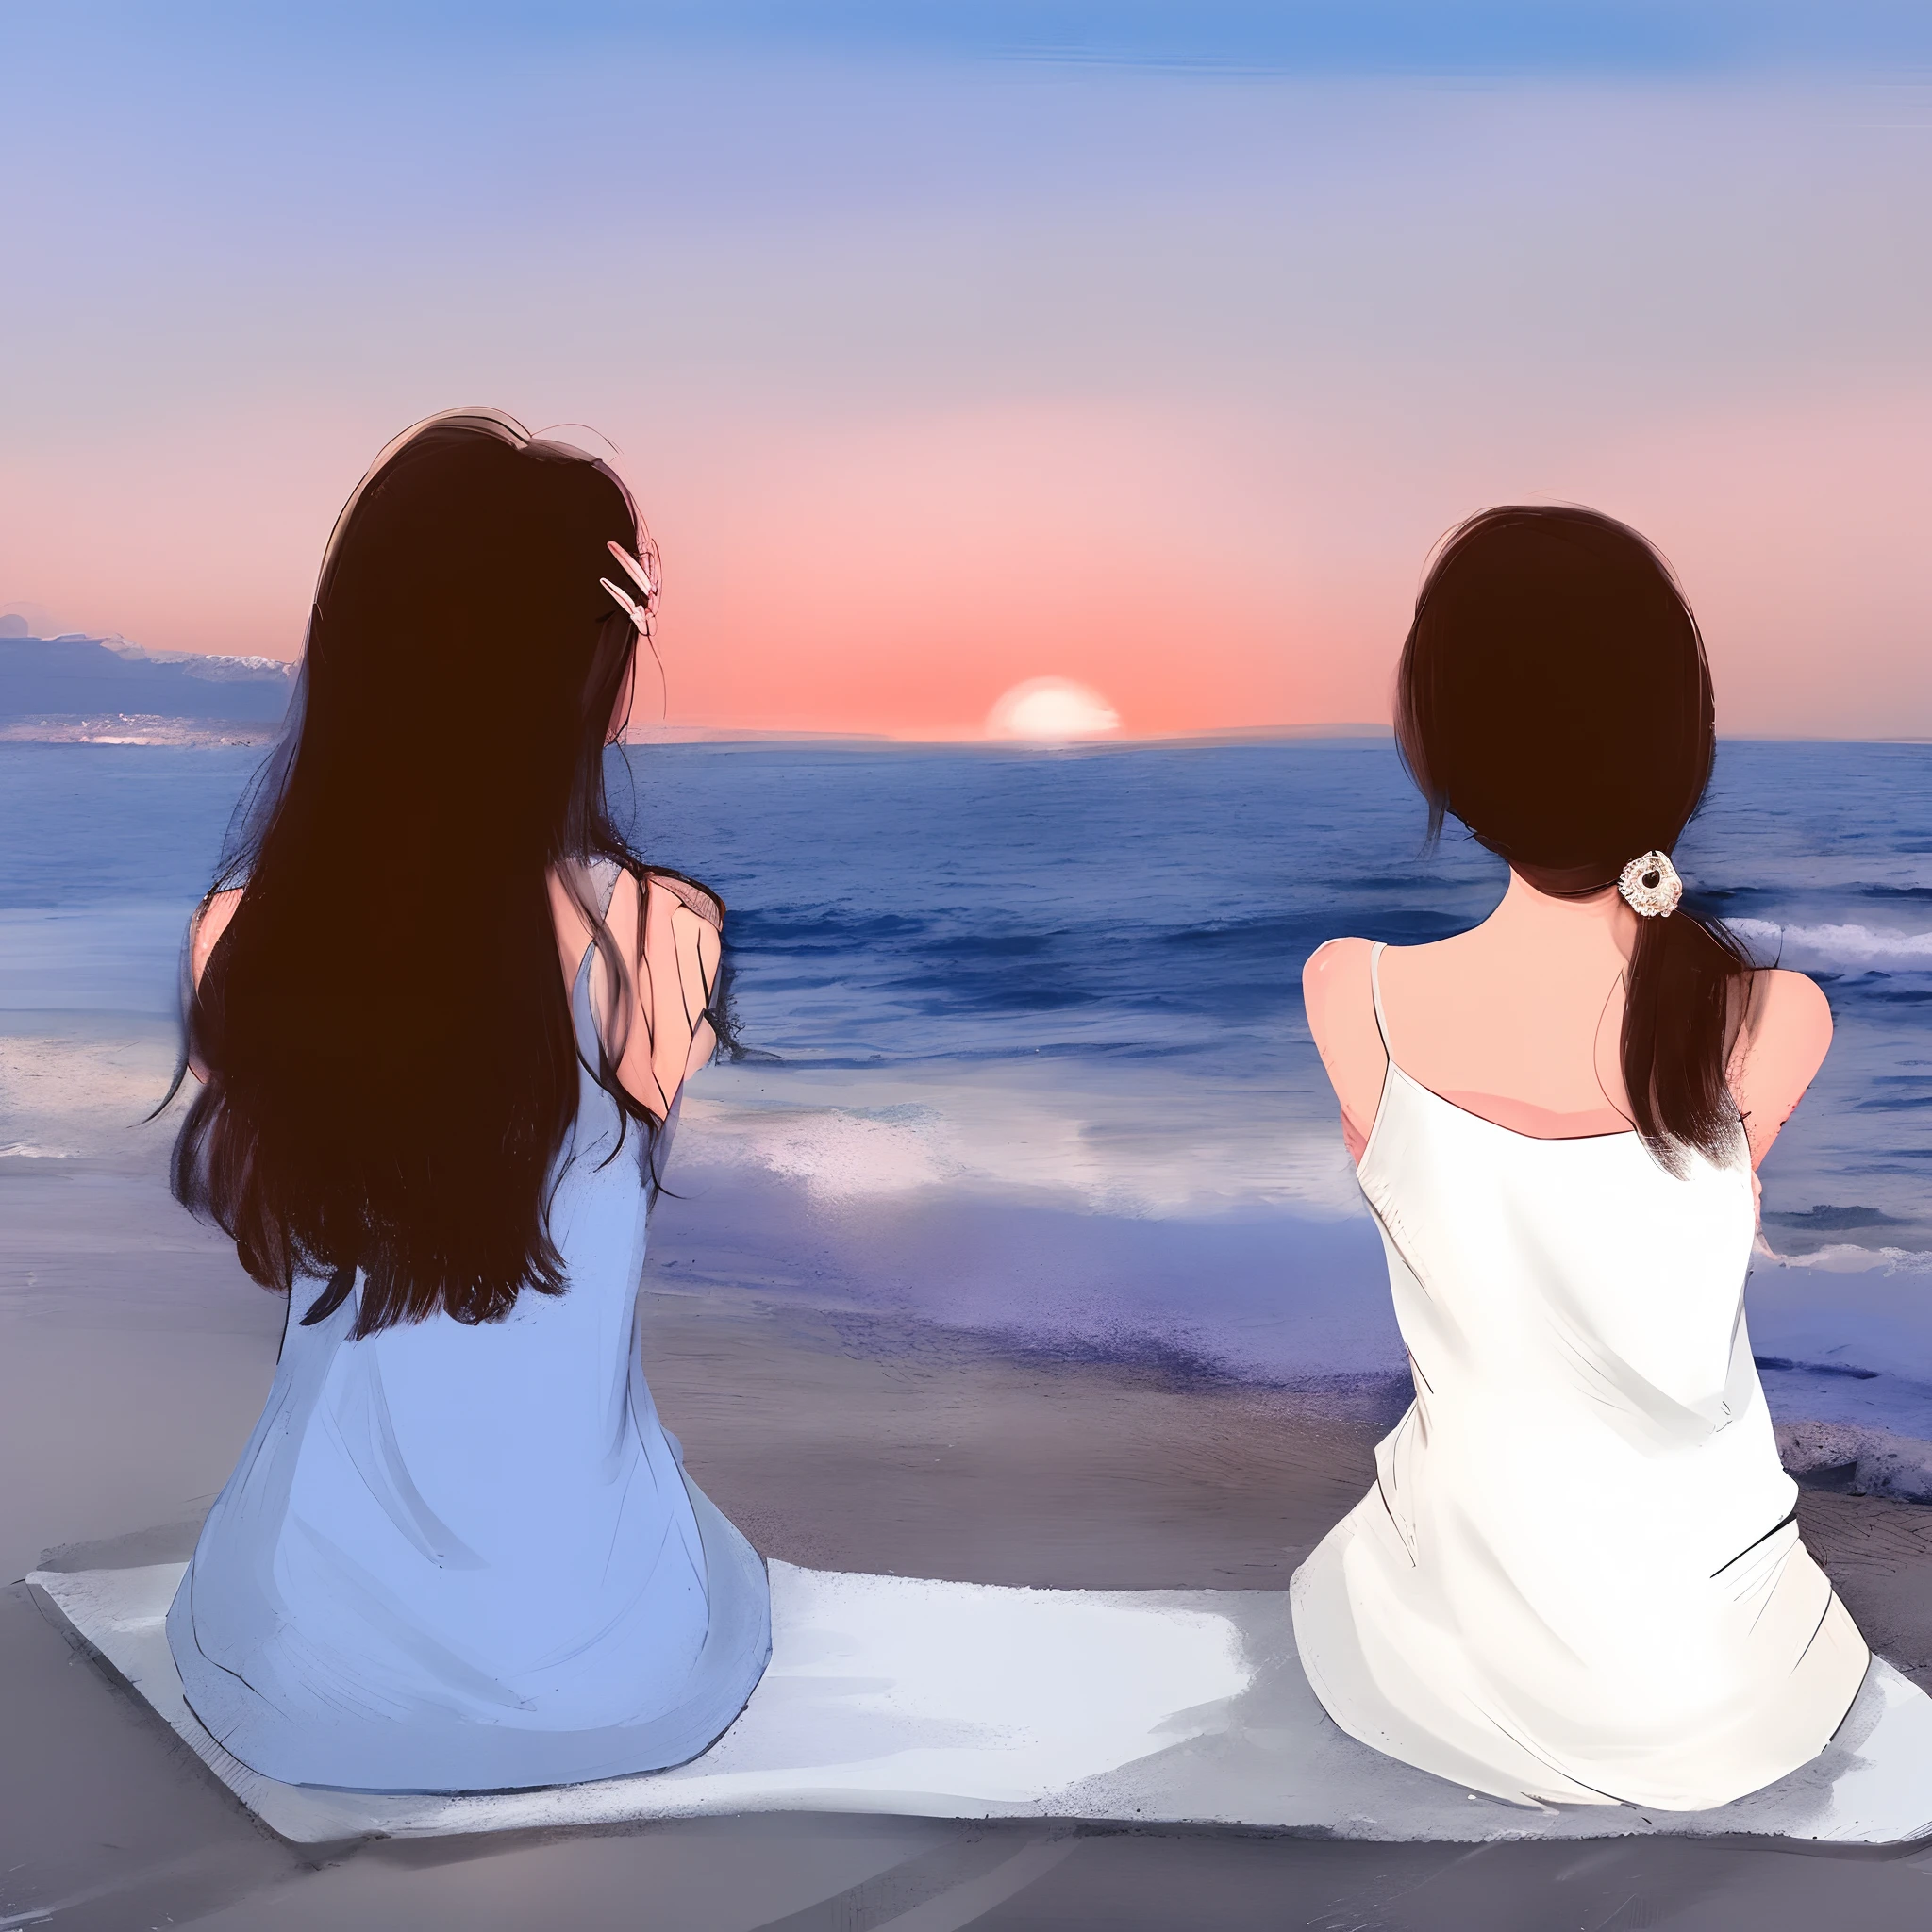 Two women sitting on the beach 일몰을 보면서, 친구들의 아름다운 그림, 석양과 함께, 일몰을 보면서, 일몰을 바라보며. 일본 만화, 해질녘 해변에서, 해변에서 해질녘에, 일몰을 보면서, 석양과 함께, 해변에 앉아, 두 소녀, 해질녘 해변에서, 디지털 아트 그림, 일몰 동안 해변에서